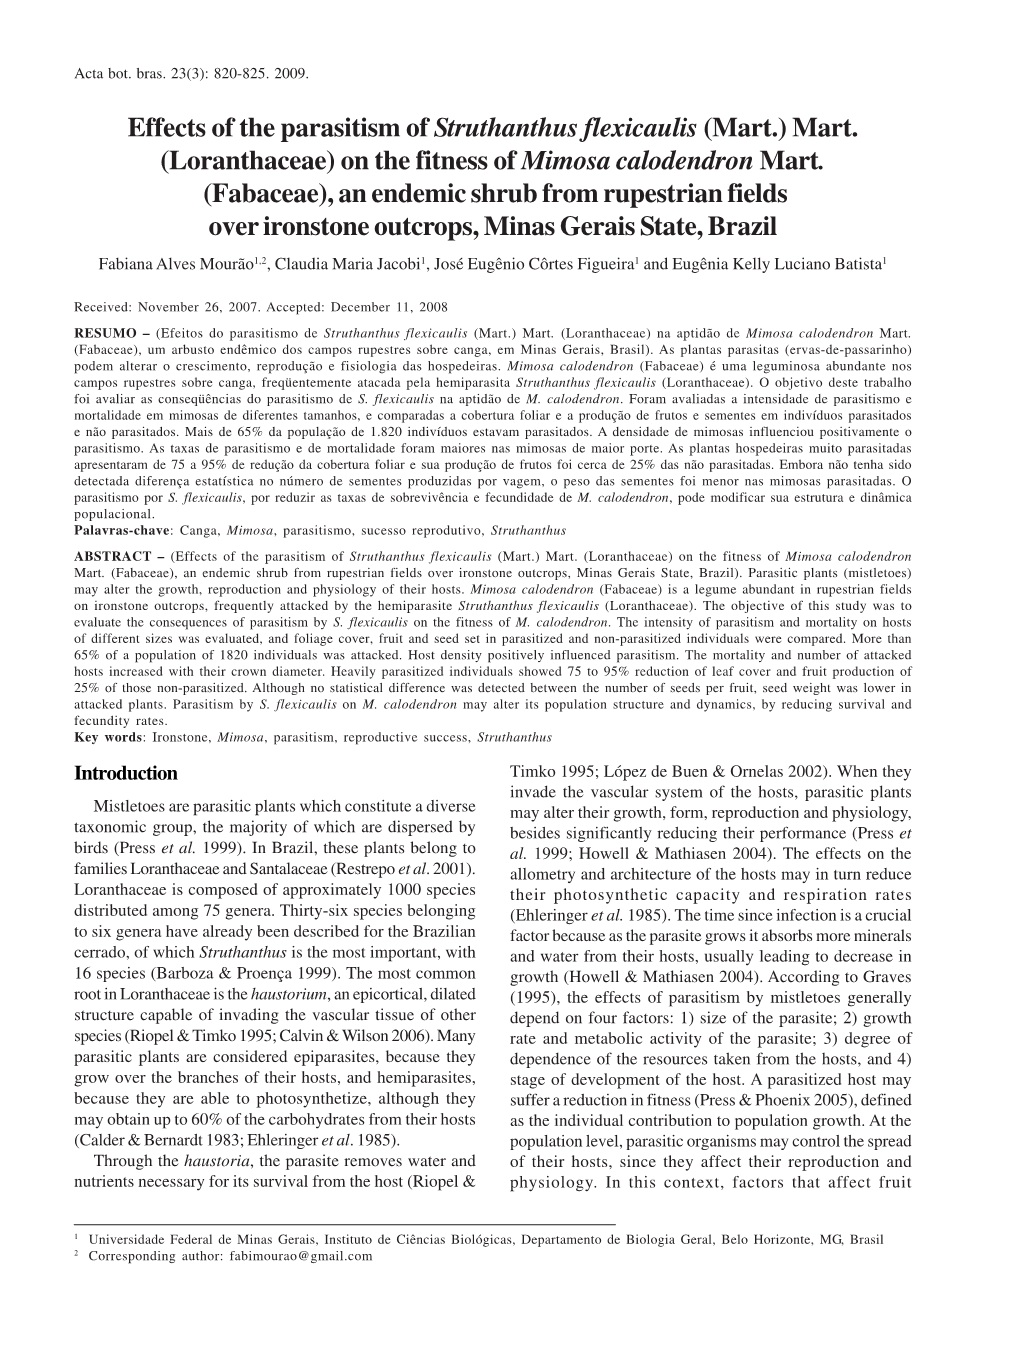 Effects of the Parasitism of Struthanthus Flexicaulis (Mart.) Mart